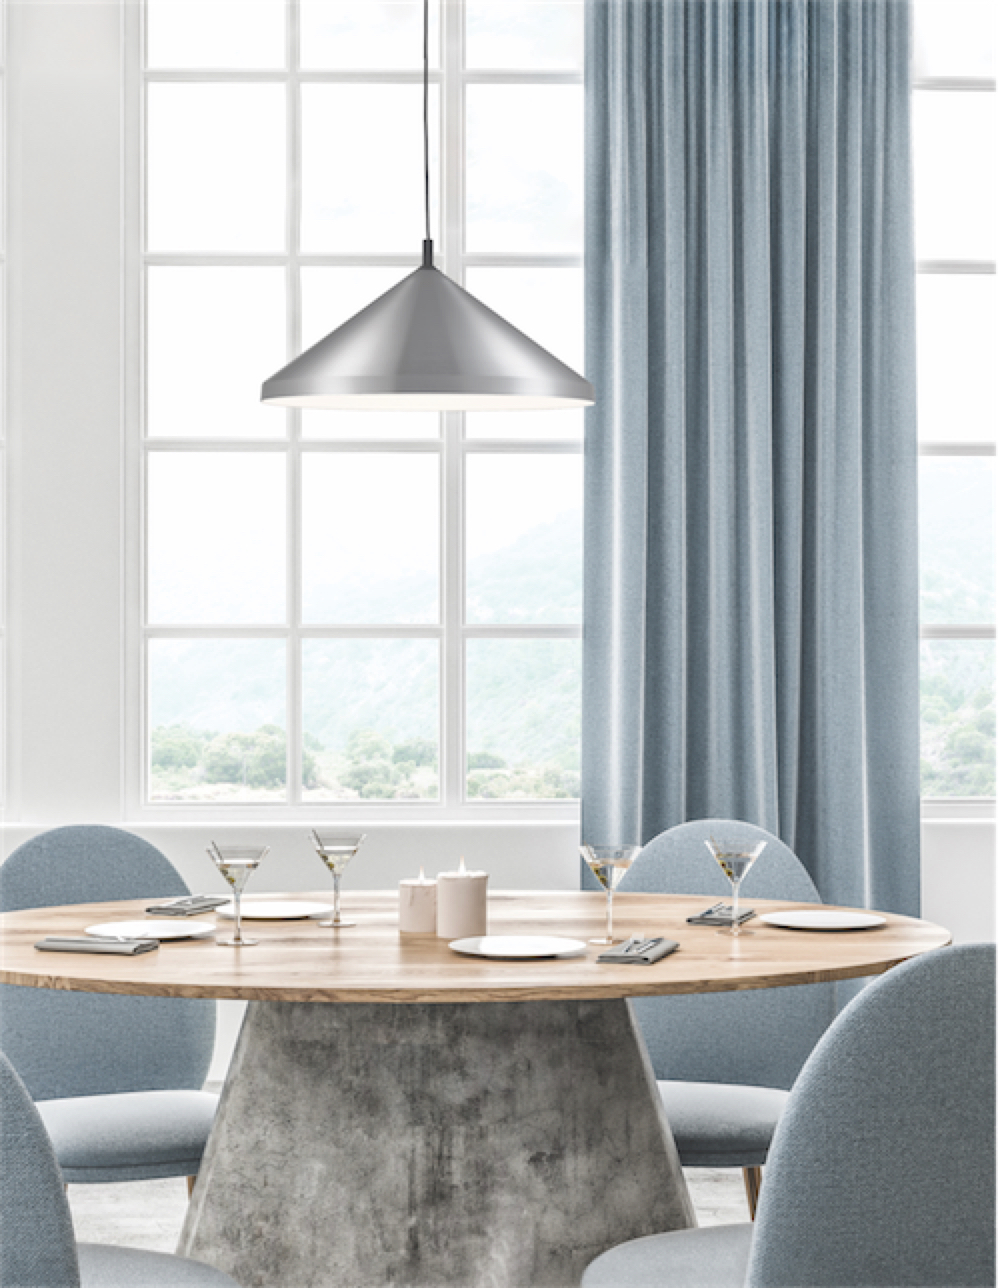 Luminaire suspendu DOROTHY 492824-BN/BK dans la salle à manger au-dessus de la table ronde en bois près de la fenêtre avec rideau gris